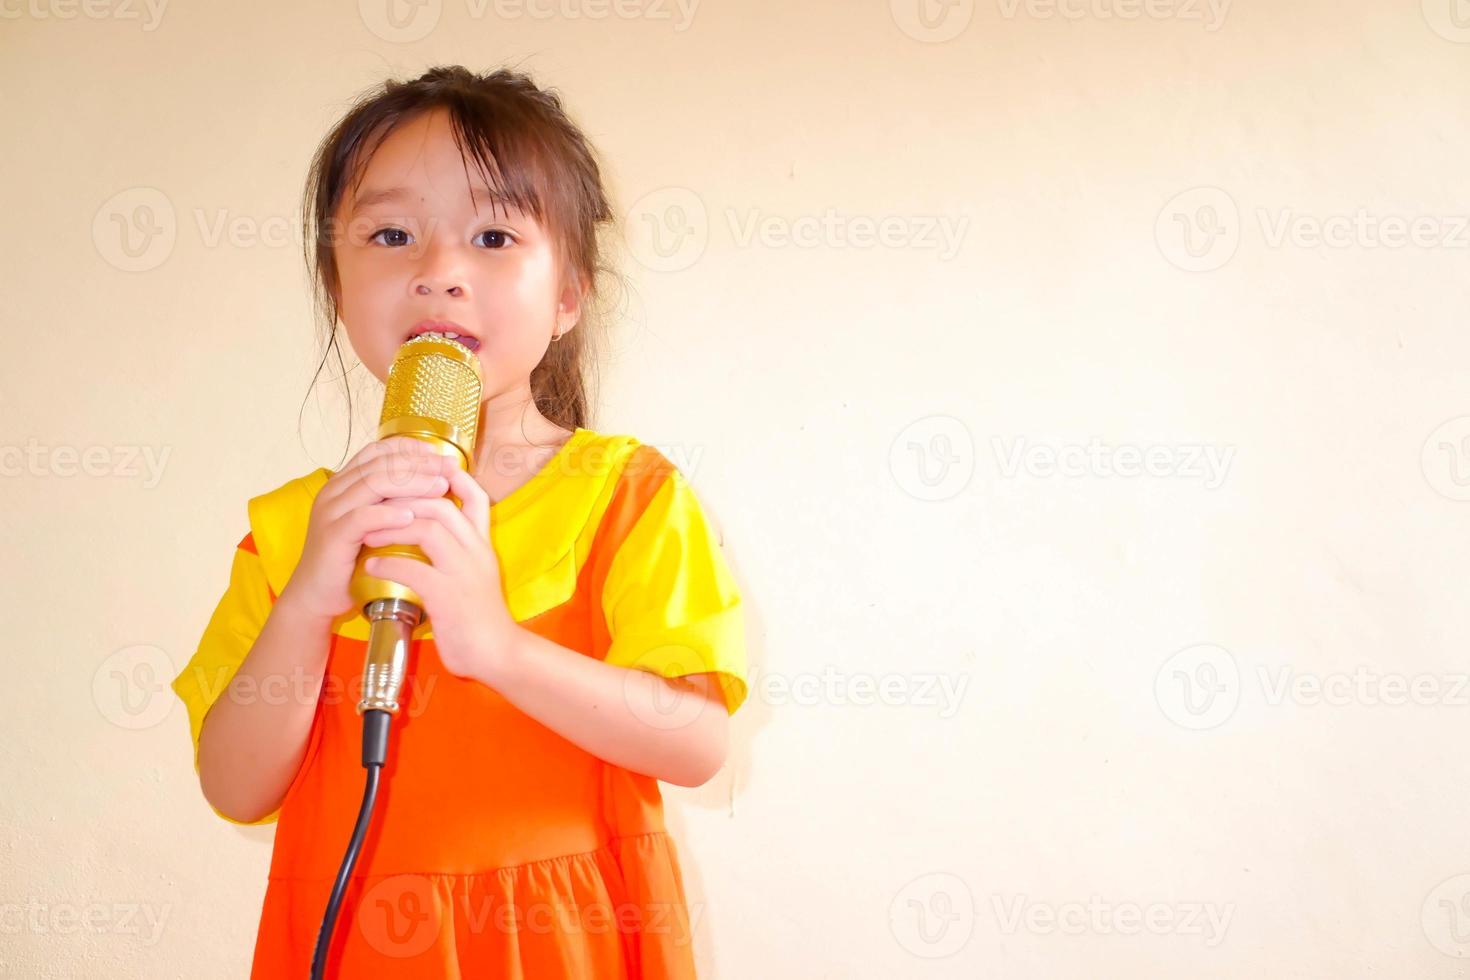 schönes baby trägt ein gelb-orangees outfit, gokowa-outfit oder mugunghwa, und hält goldenes mikrofon, das musik singt. Modekleid für Mädchen und Teenager. foto